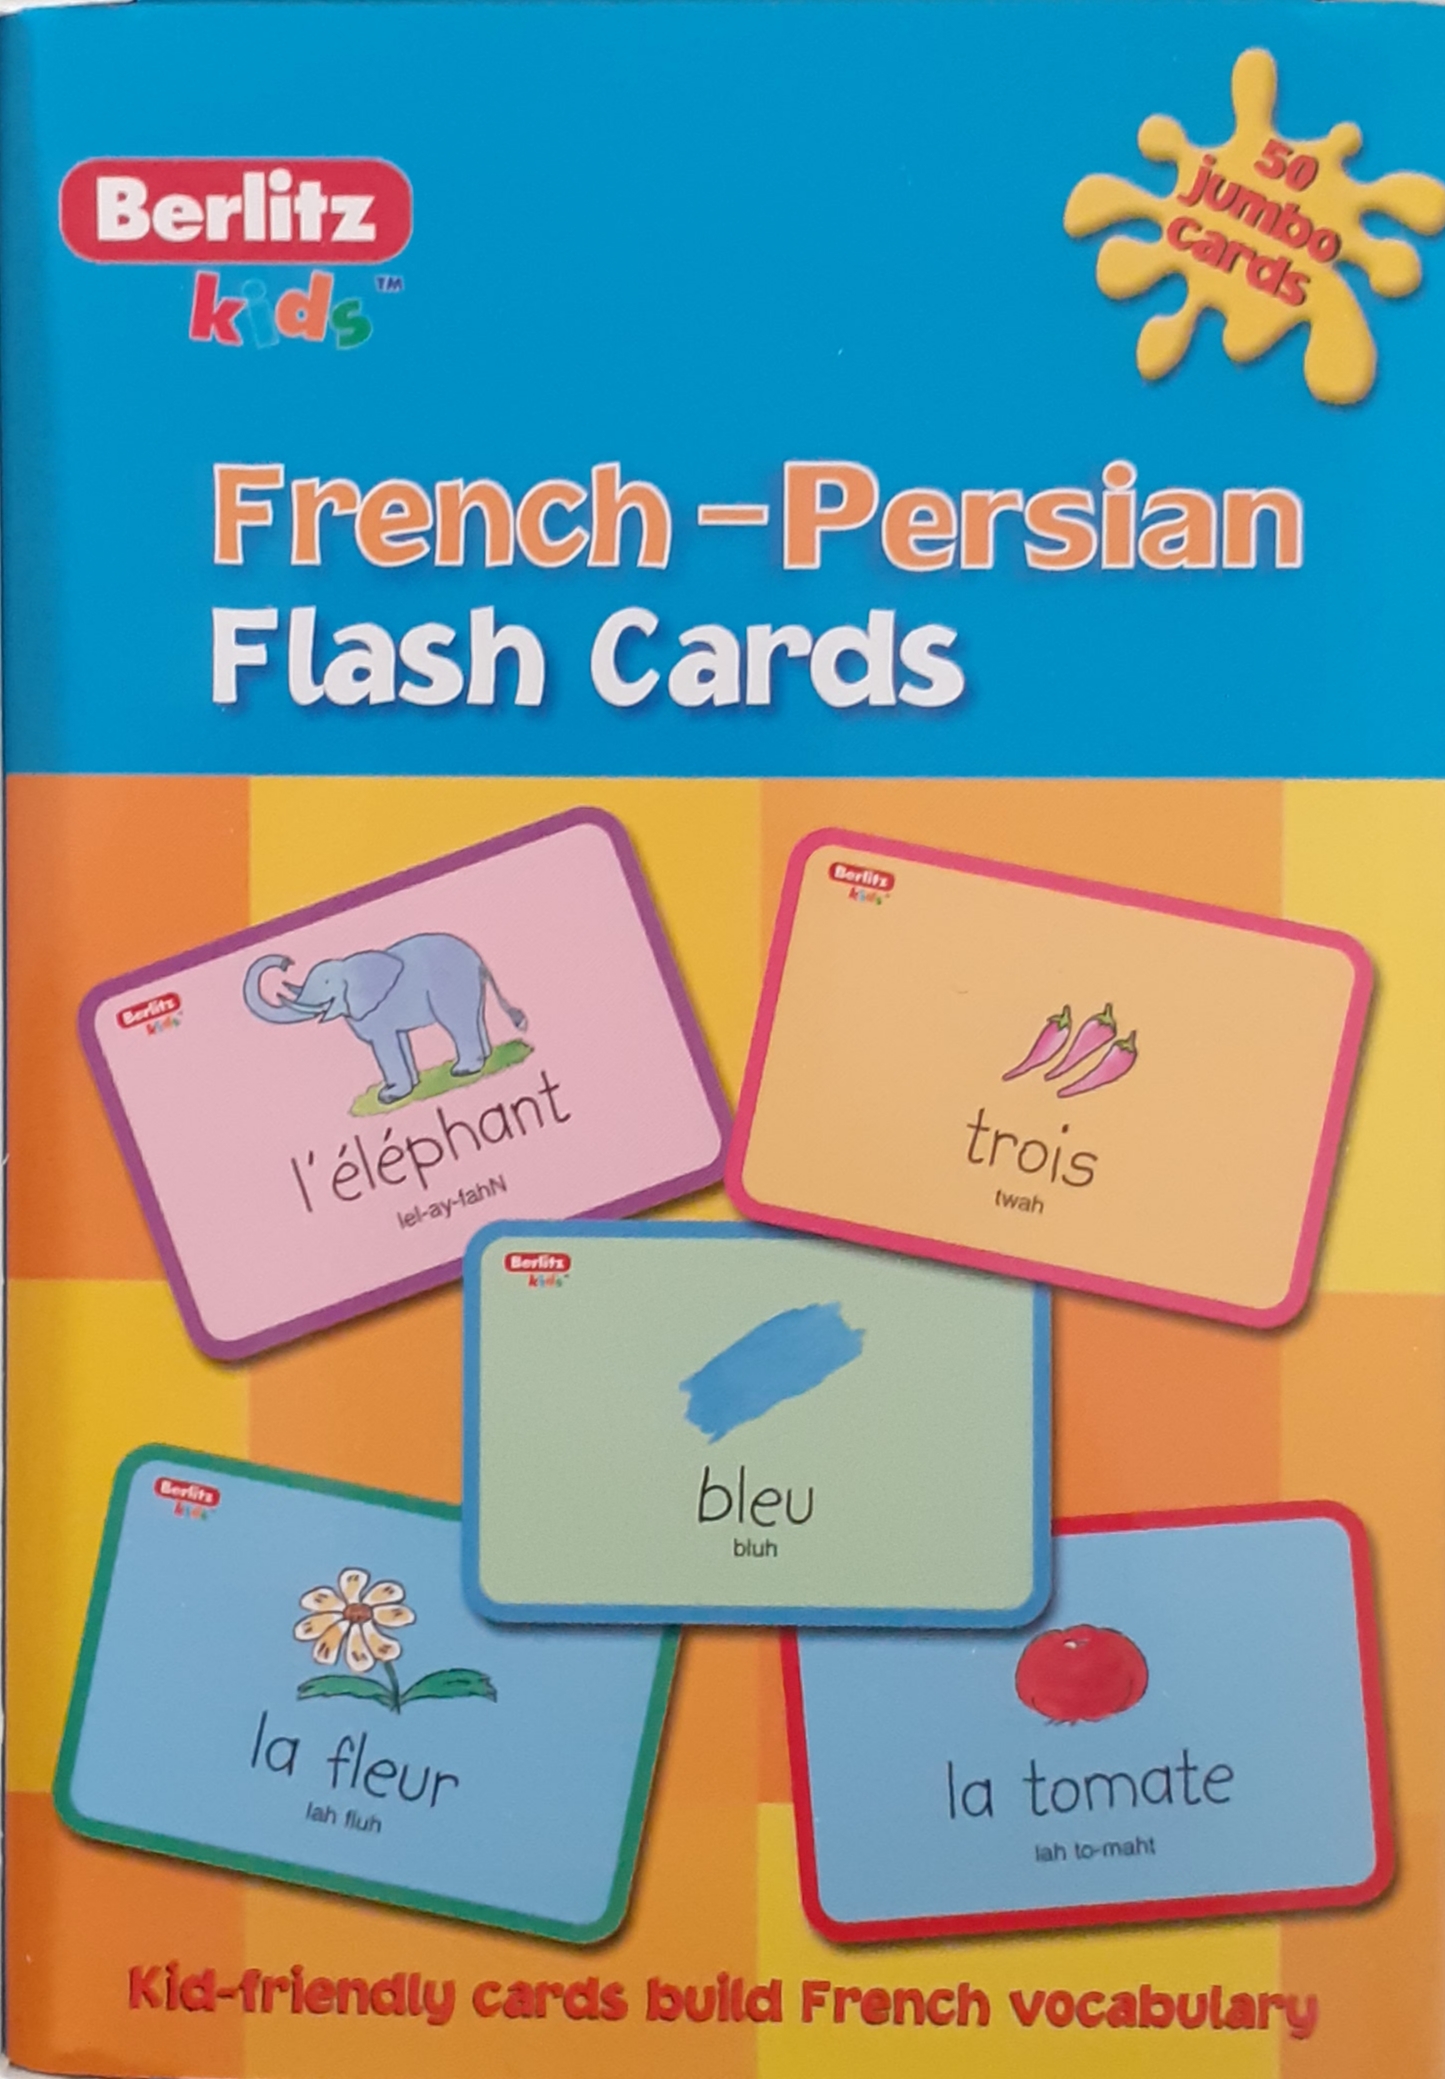 فلش کارت فرانسه به فارسی